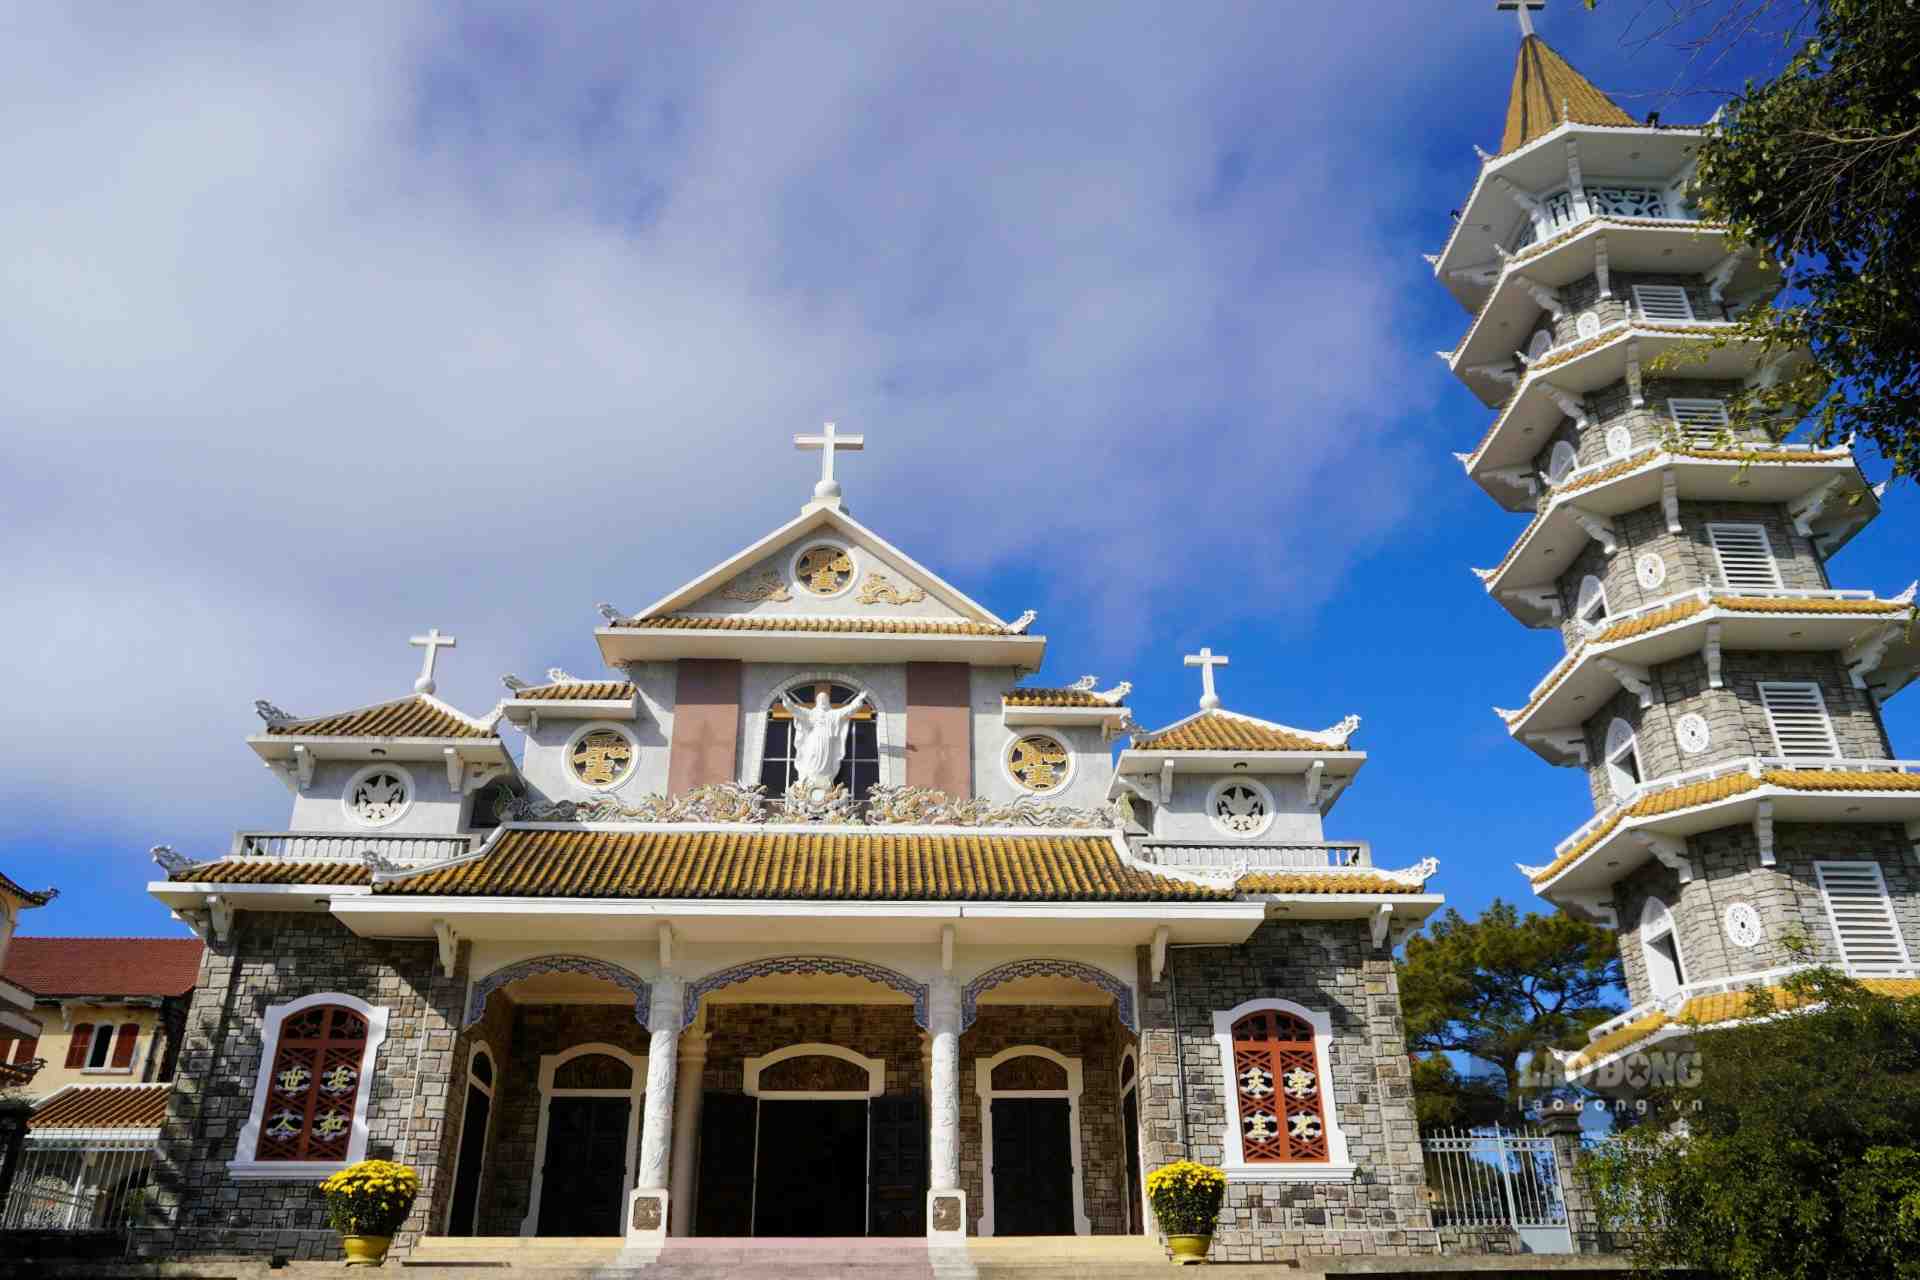 Tọa lạc ở vị trí cao nhất của đồi Thiên An, đan viện Thiên An được thành lập vào năm 1940 bởi các đan sĩ dòng Bénedictine. Công trình hiện nay được xây dựng vào năm 1994 với kiến trúc đậm nét Á Đông.